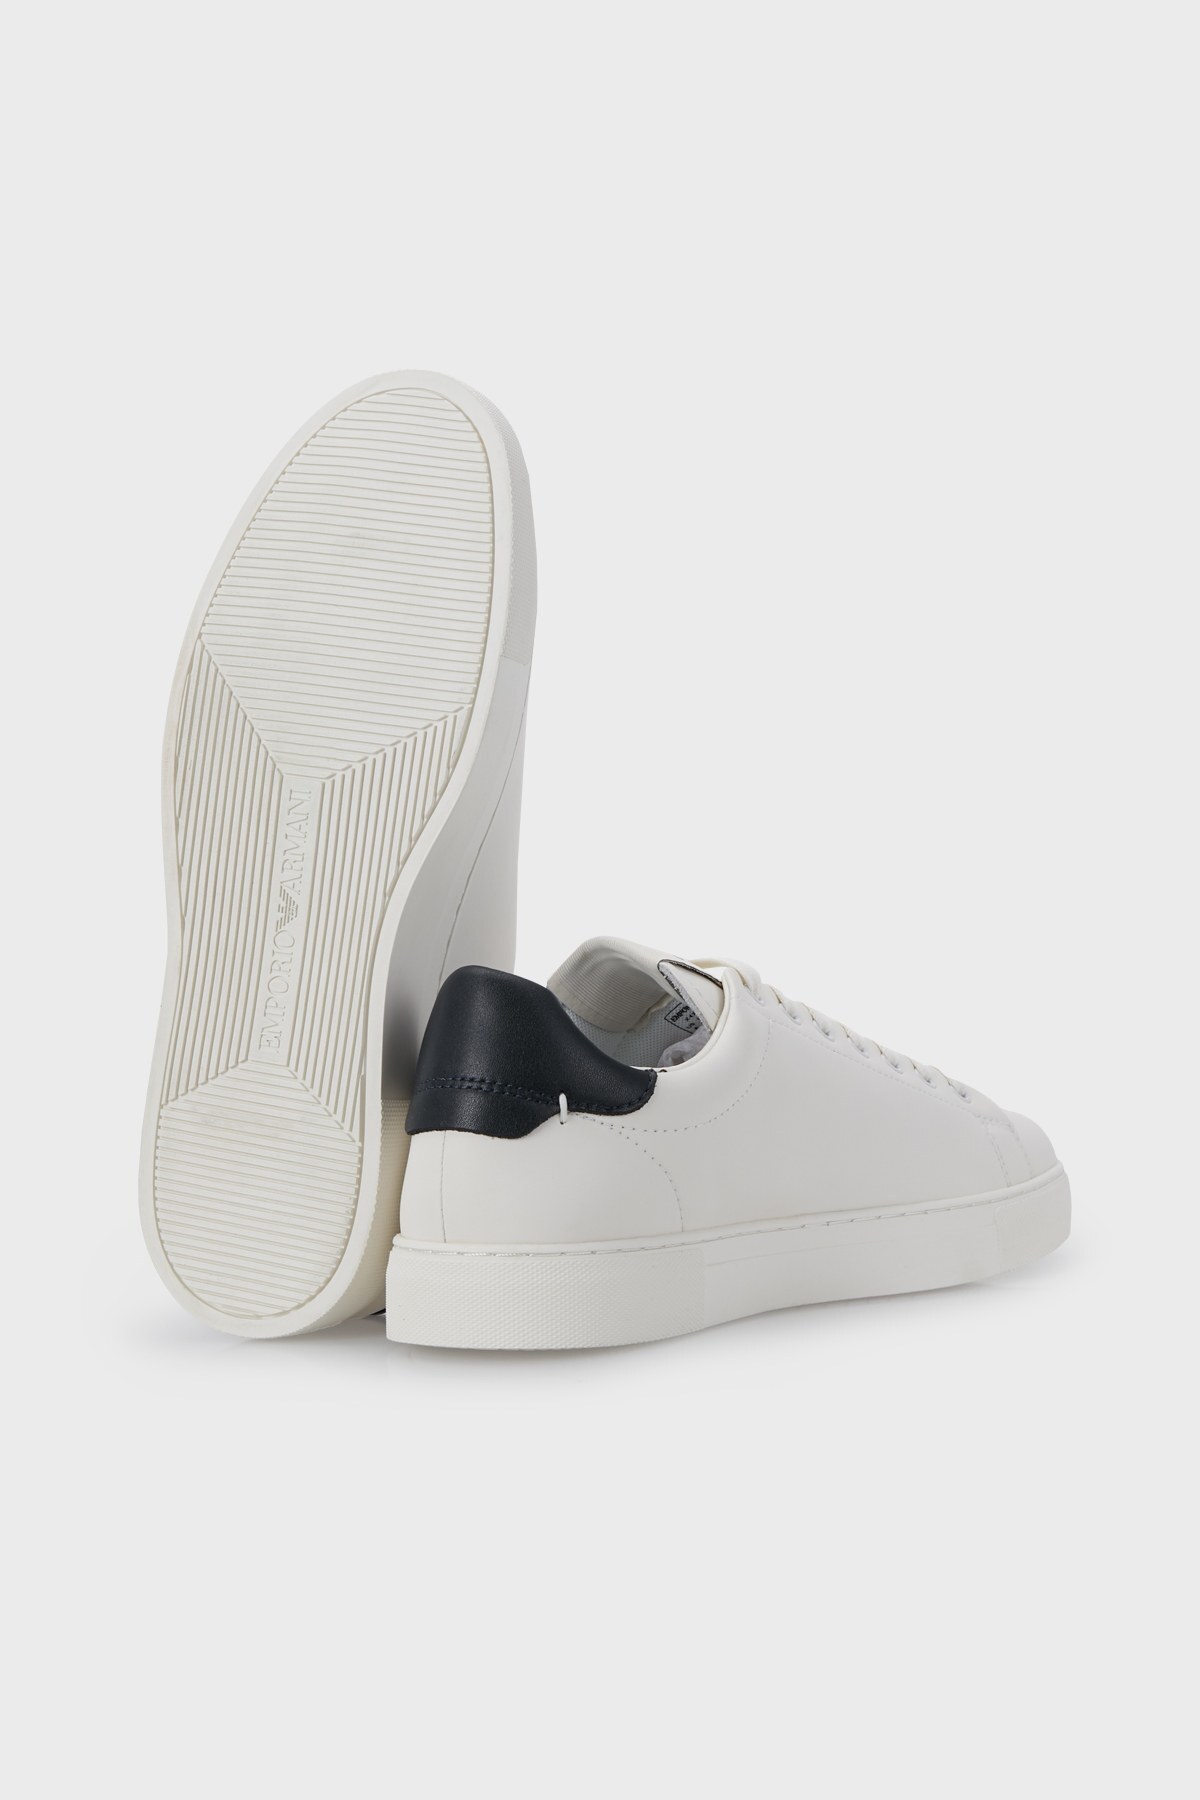 Emporio Armani Deri Sneaker Erkek Ayakkabı X4X554 XM990 Q802 BEYAZ